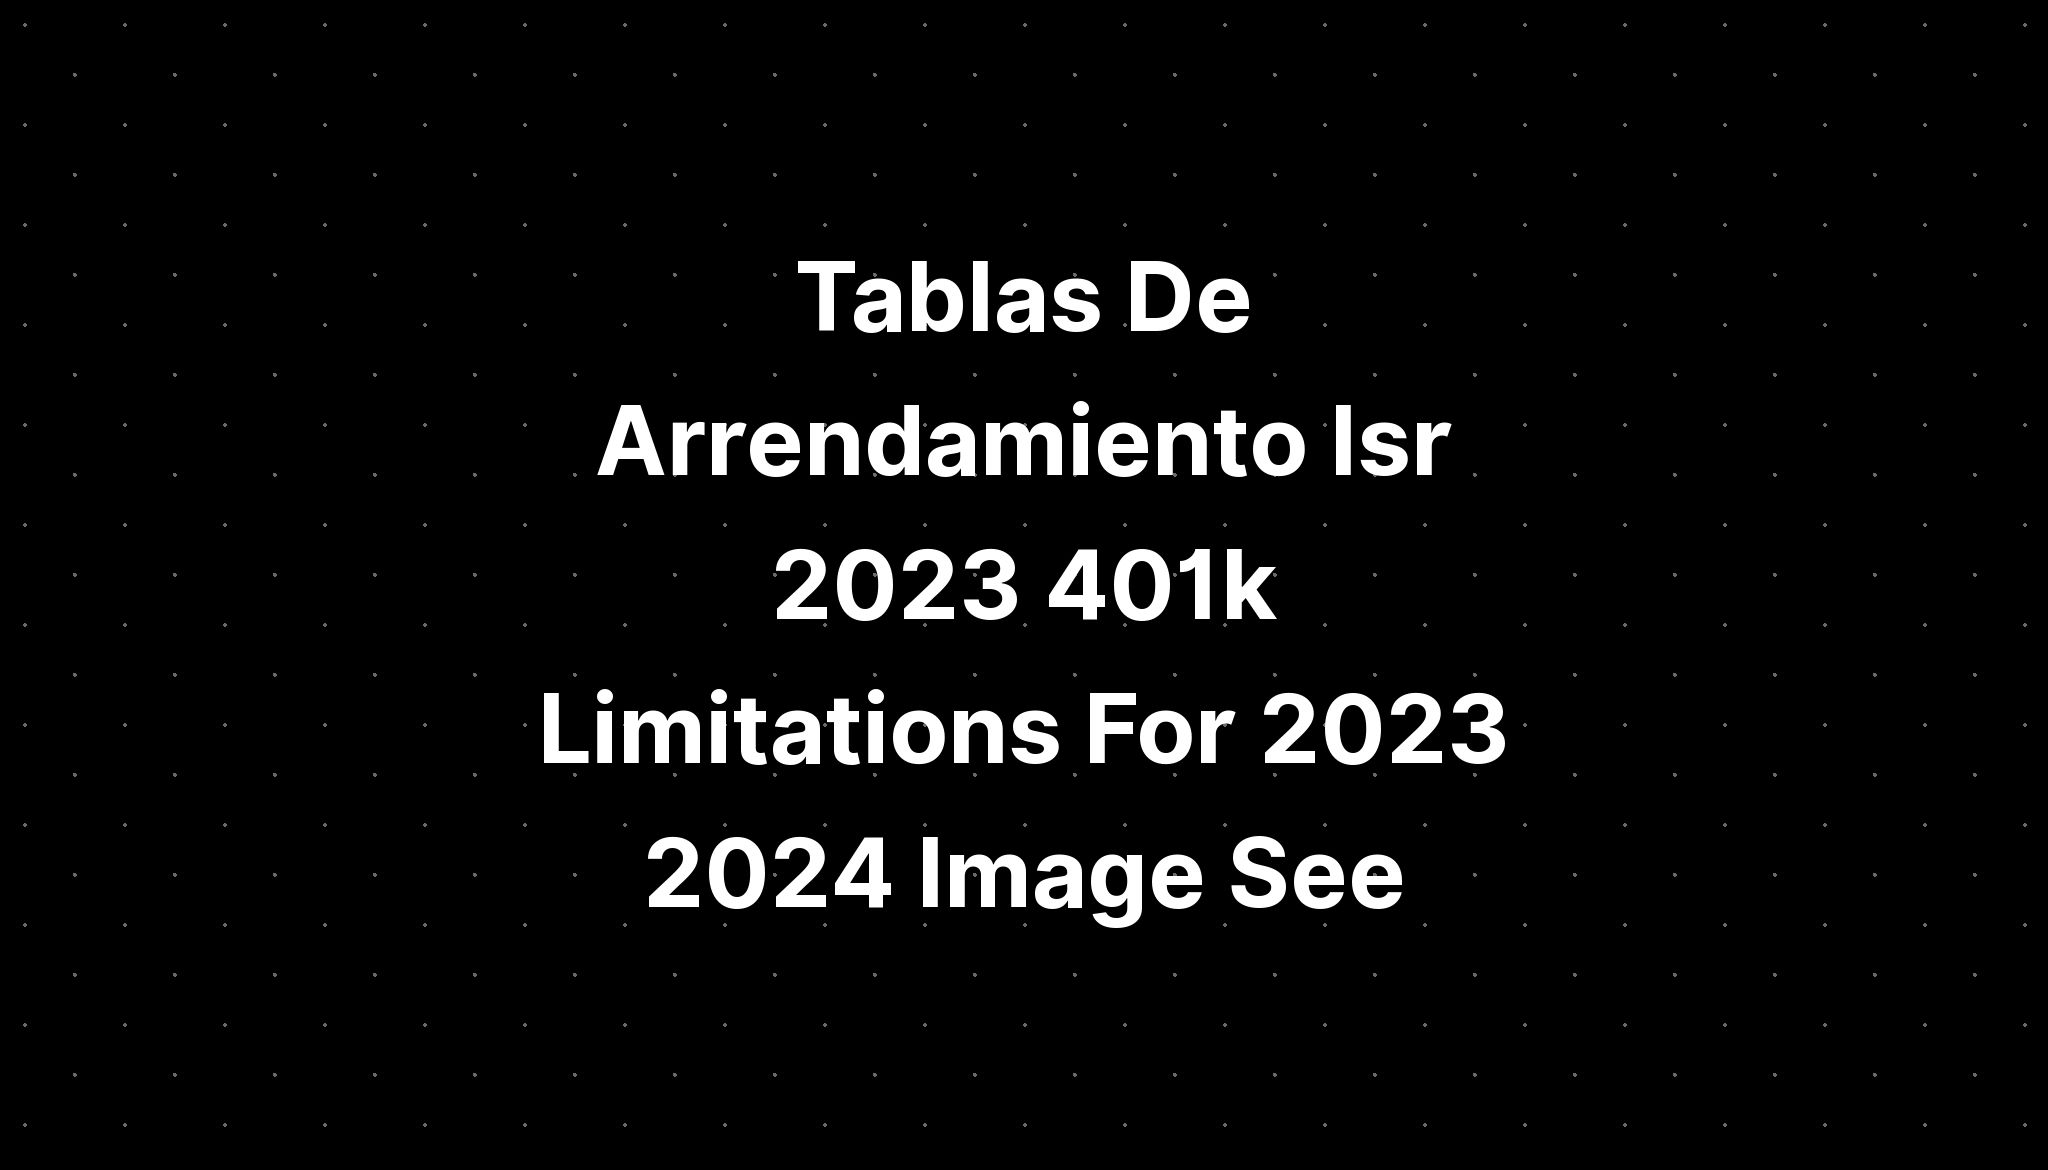 Tablas De Arrendamiento Isr 2023 401k Limitations For 2023 2024 Image